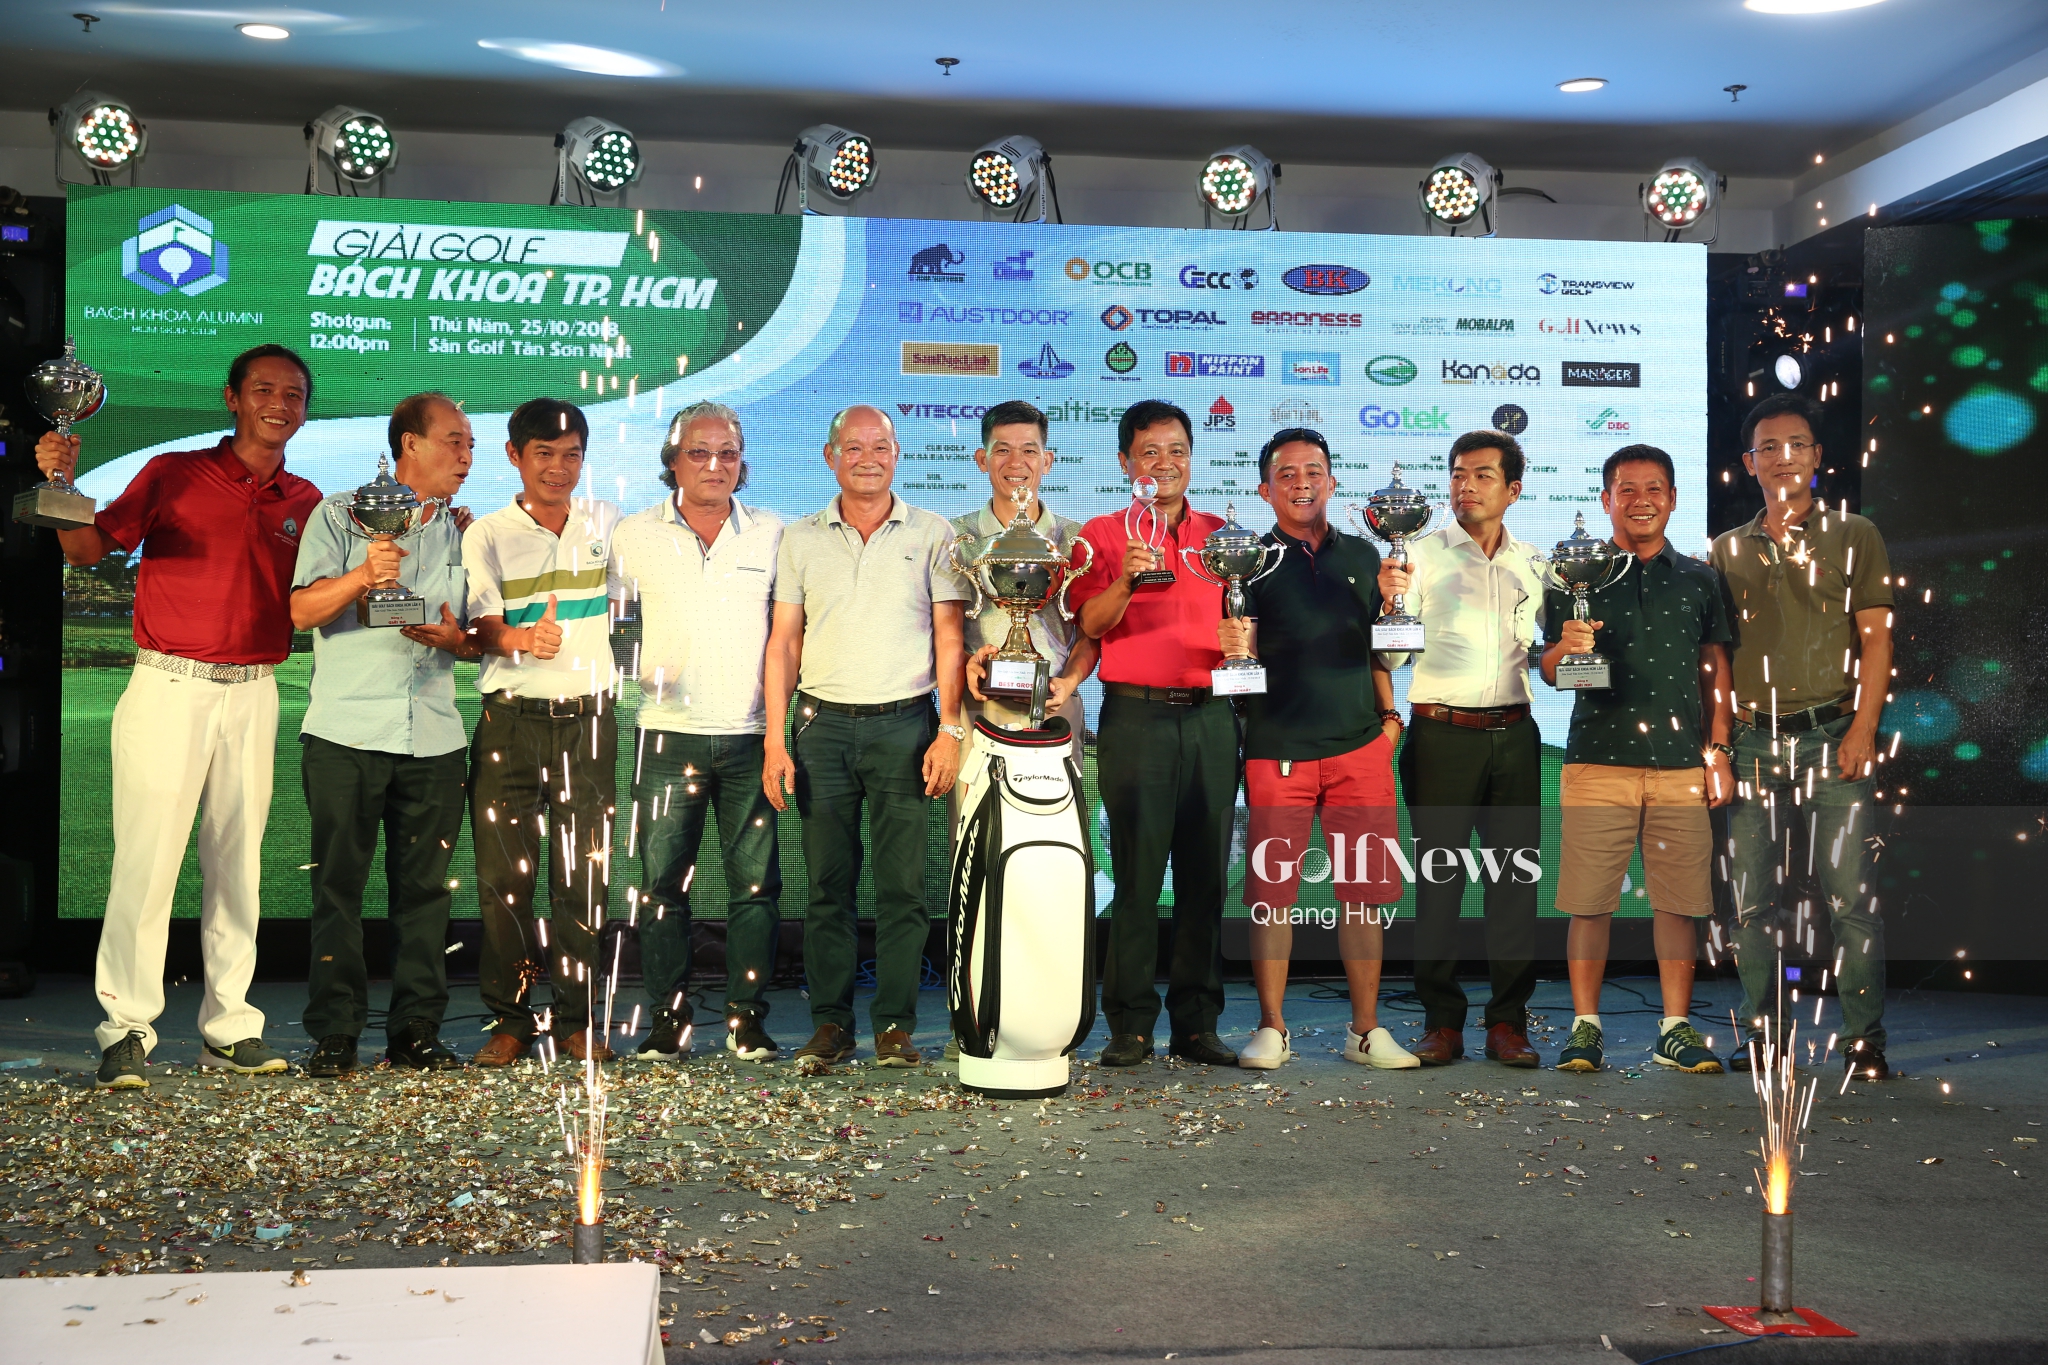 Giải golf Bách Khoa TP.HCM chính thức khép lại BestGross đã tìm được chủ nhân